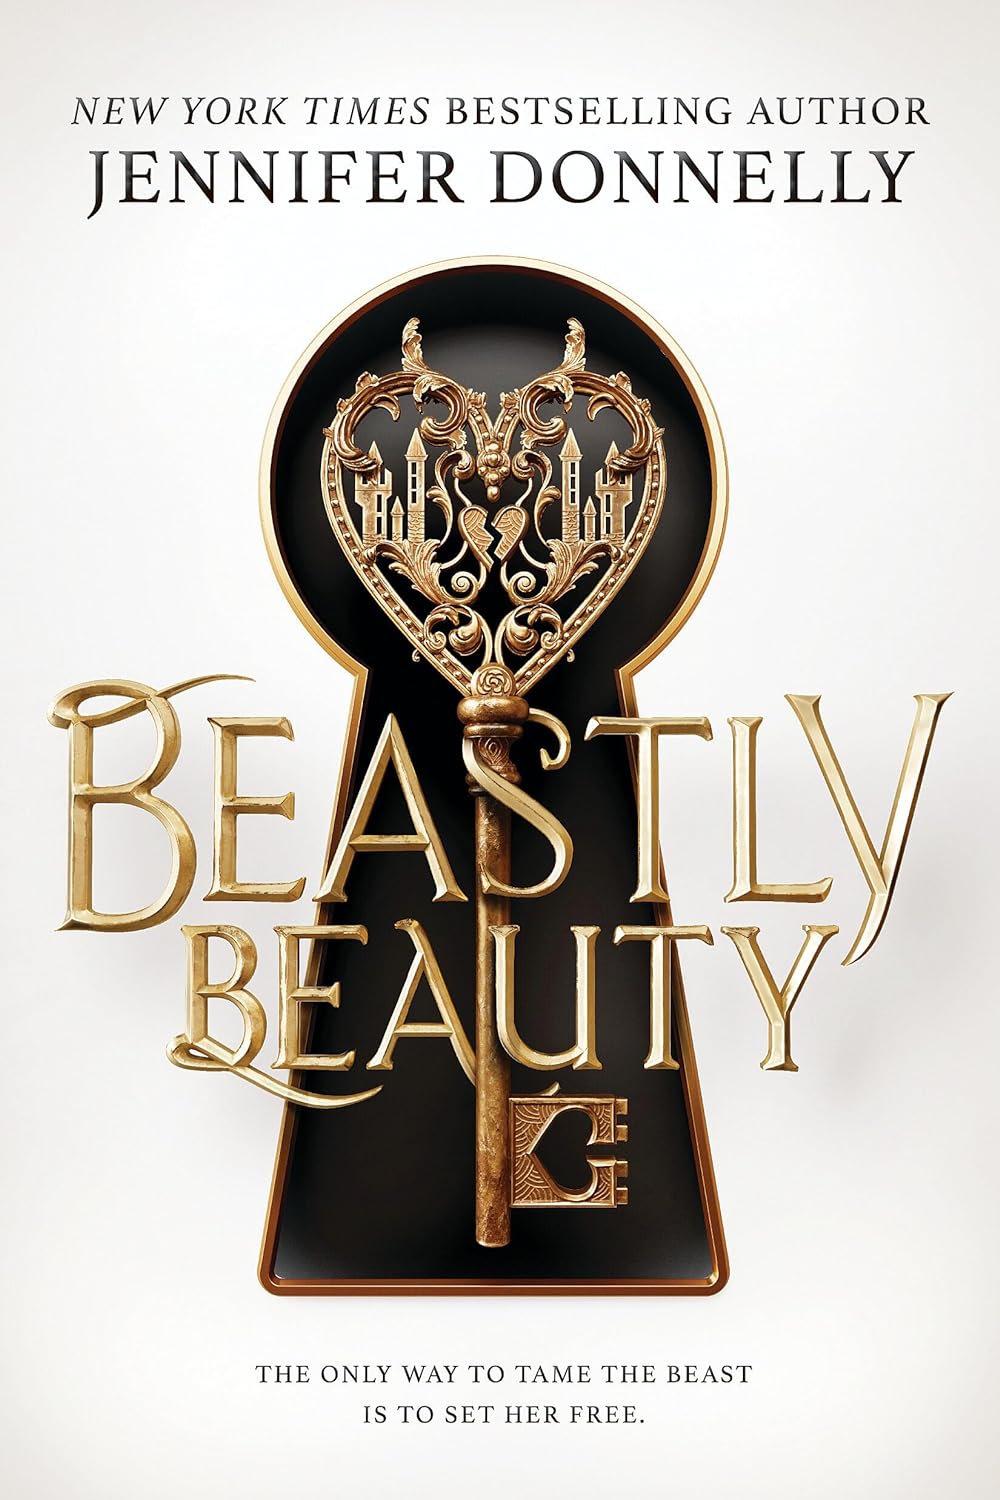 Beastly Beauty by Jennifer Donnelly